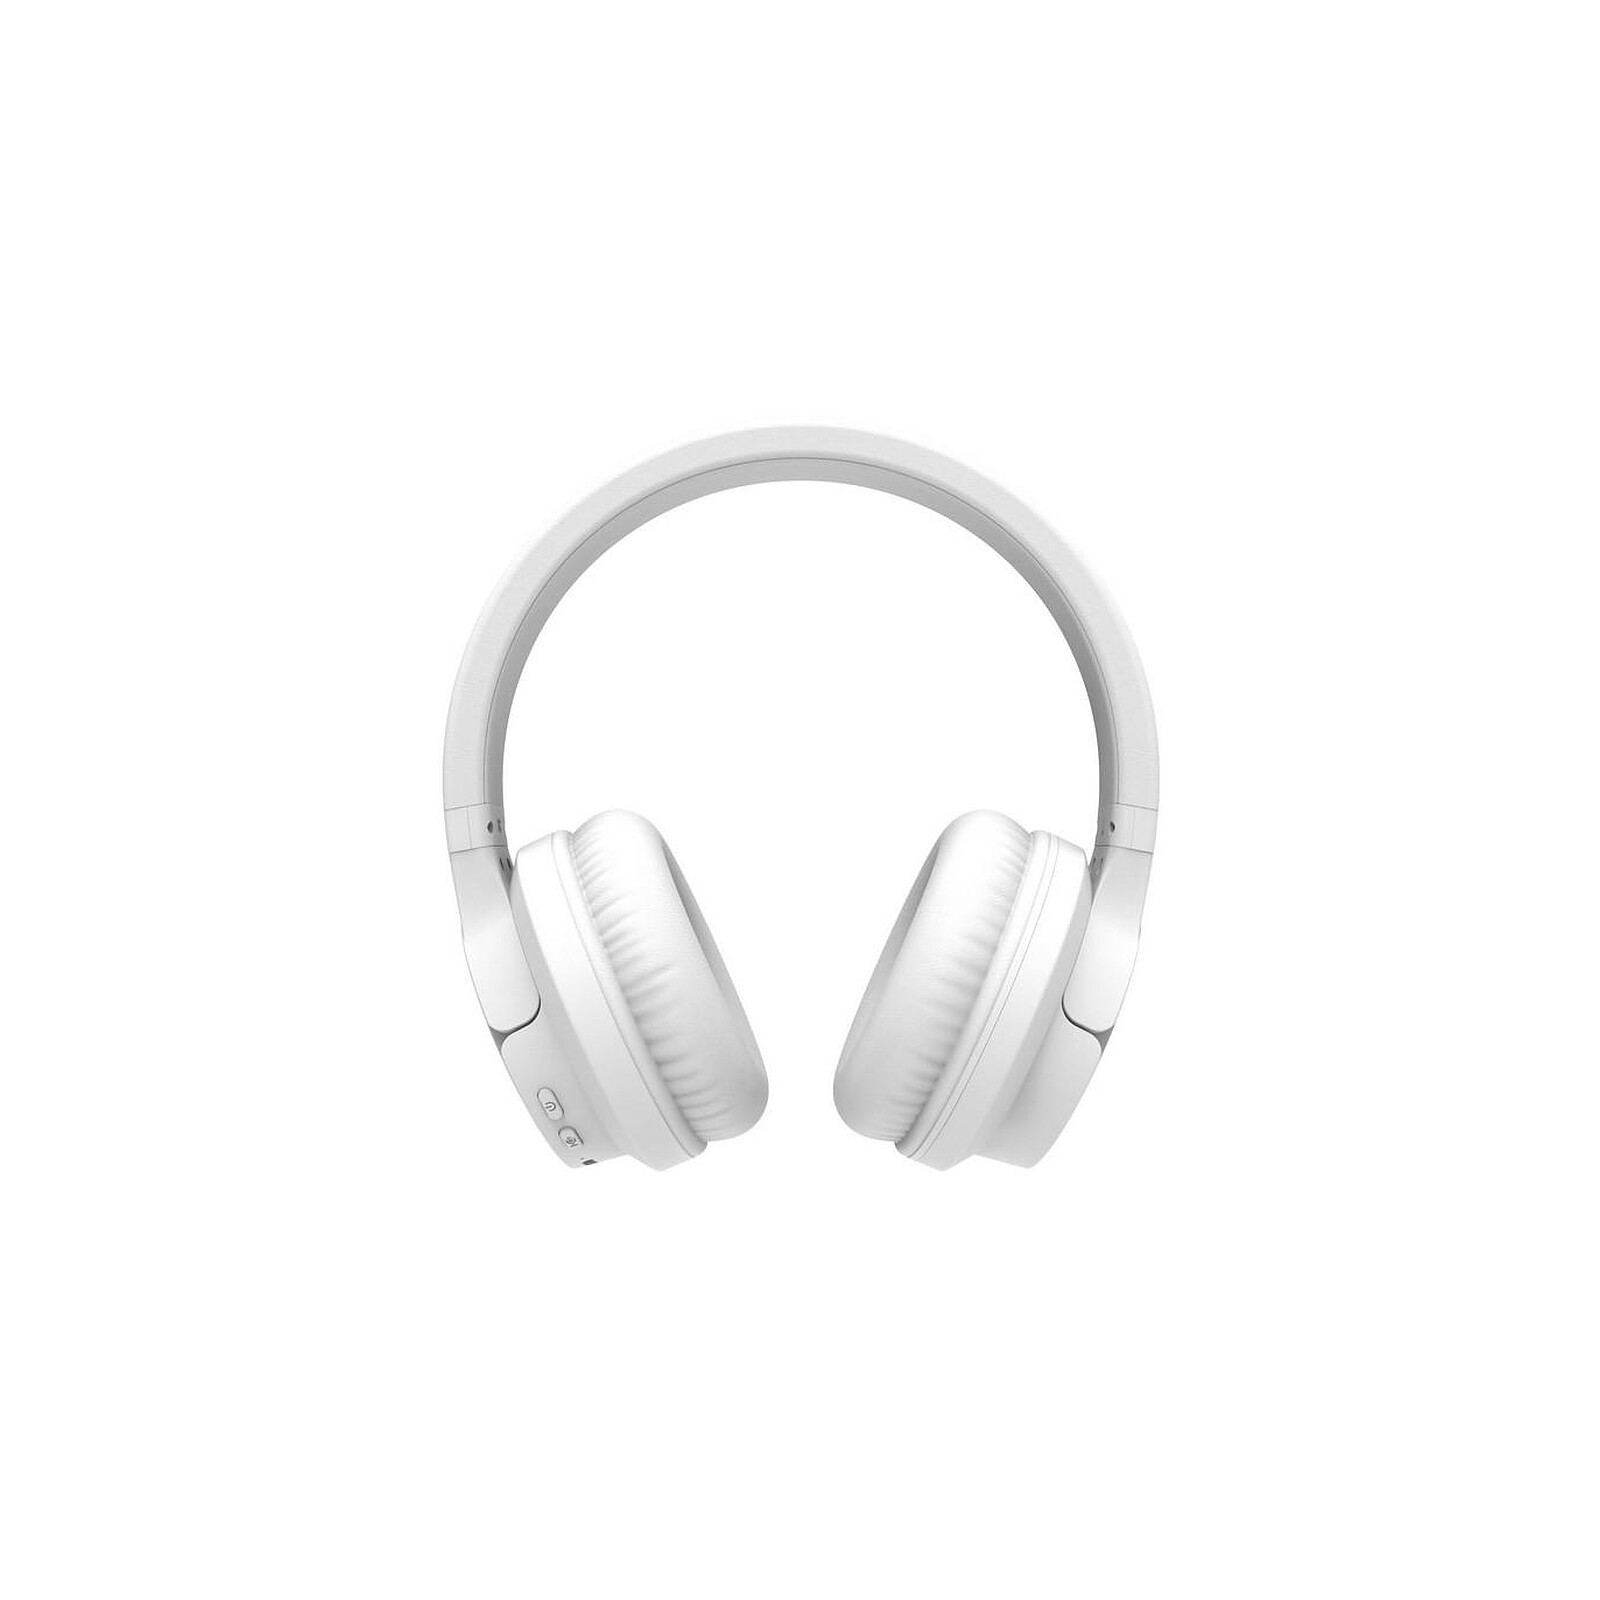 Blaupunkt - Ecouteurs Bluetooth sans fil avec boîtier, écran LED avec  affichage d'autonomie Blaupunkt - BLP4899-112 - Blanc/Argent - Casque - LDLC